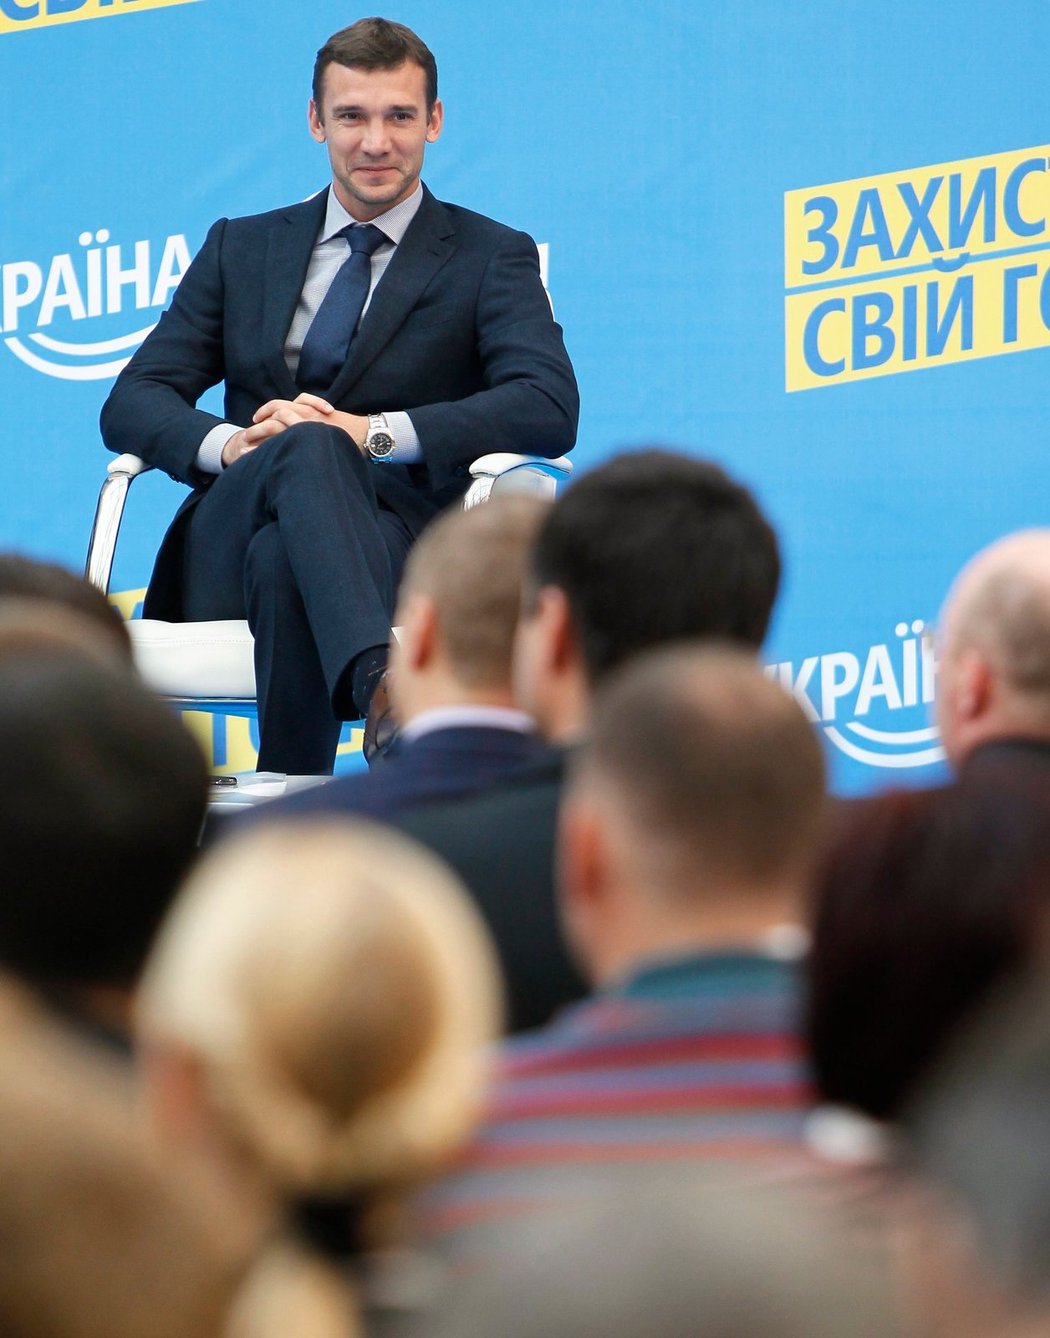 Andrej Ševčenko, někdejší kanonýr ukrajinského národního týmu, se po ukončení kariéry vrhl do politiky. Nyní by se mohl k fotbalu vrátit v roli kouče ukrajinské reprezentace